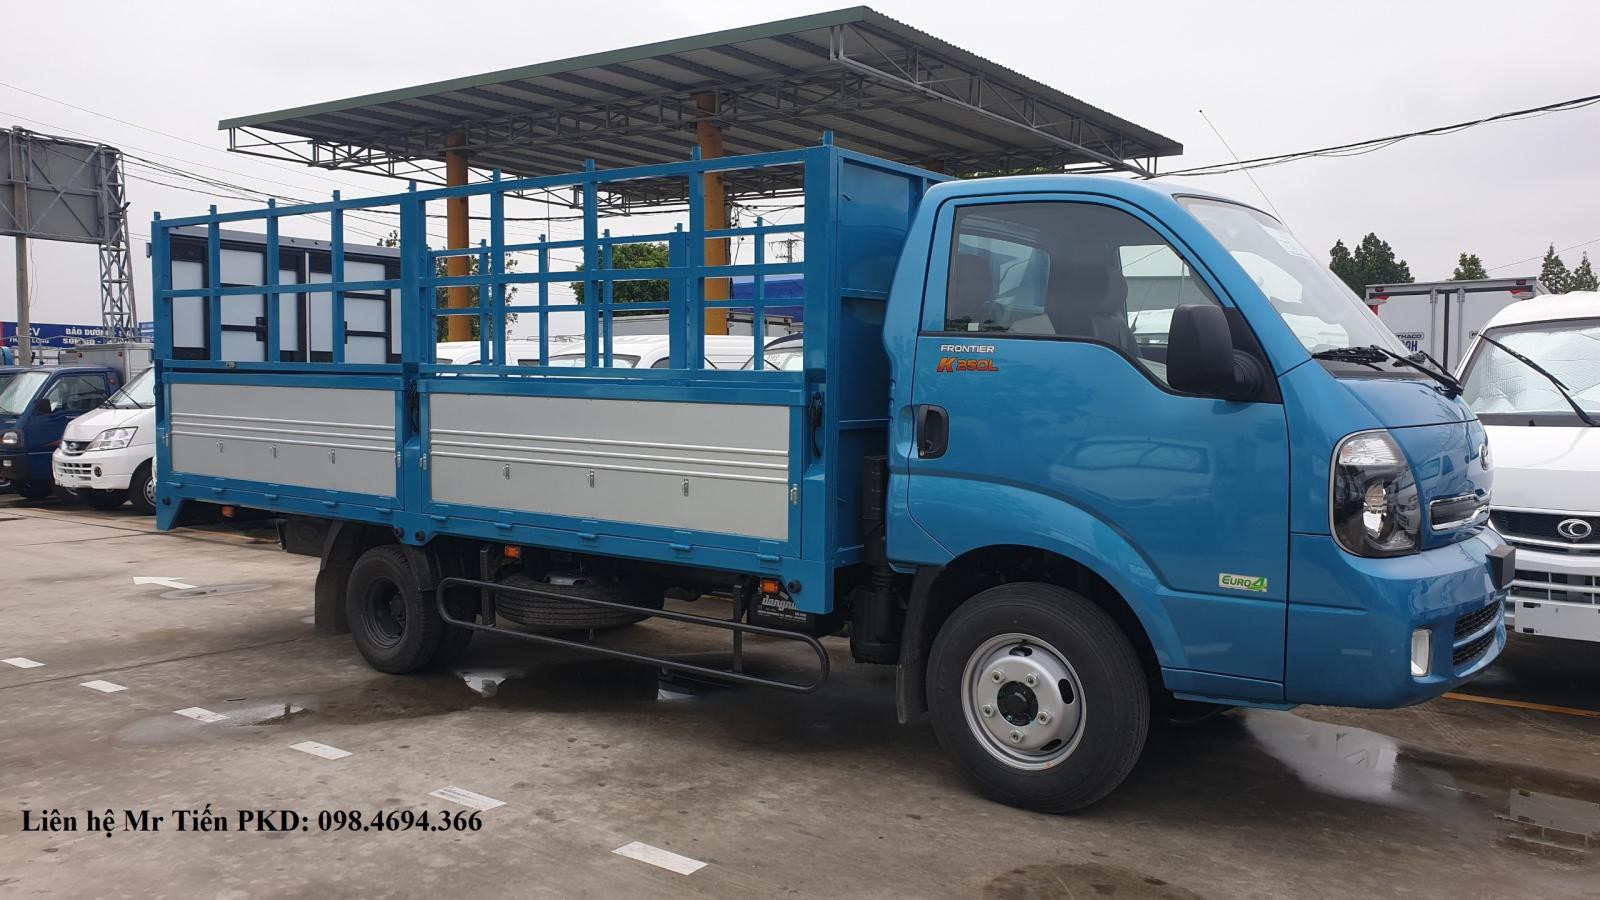 Bán xe tải KIA K250L thùng dài 4.5m tải 2.4 tấn giá tốt, đóng các loại thùng, hỗ trợ trả góp, 